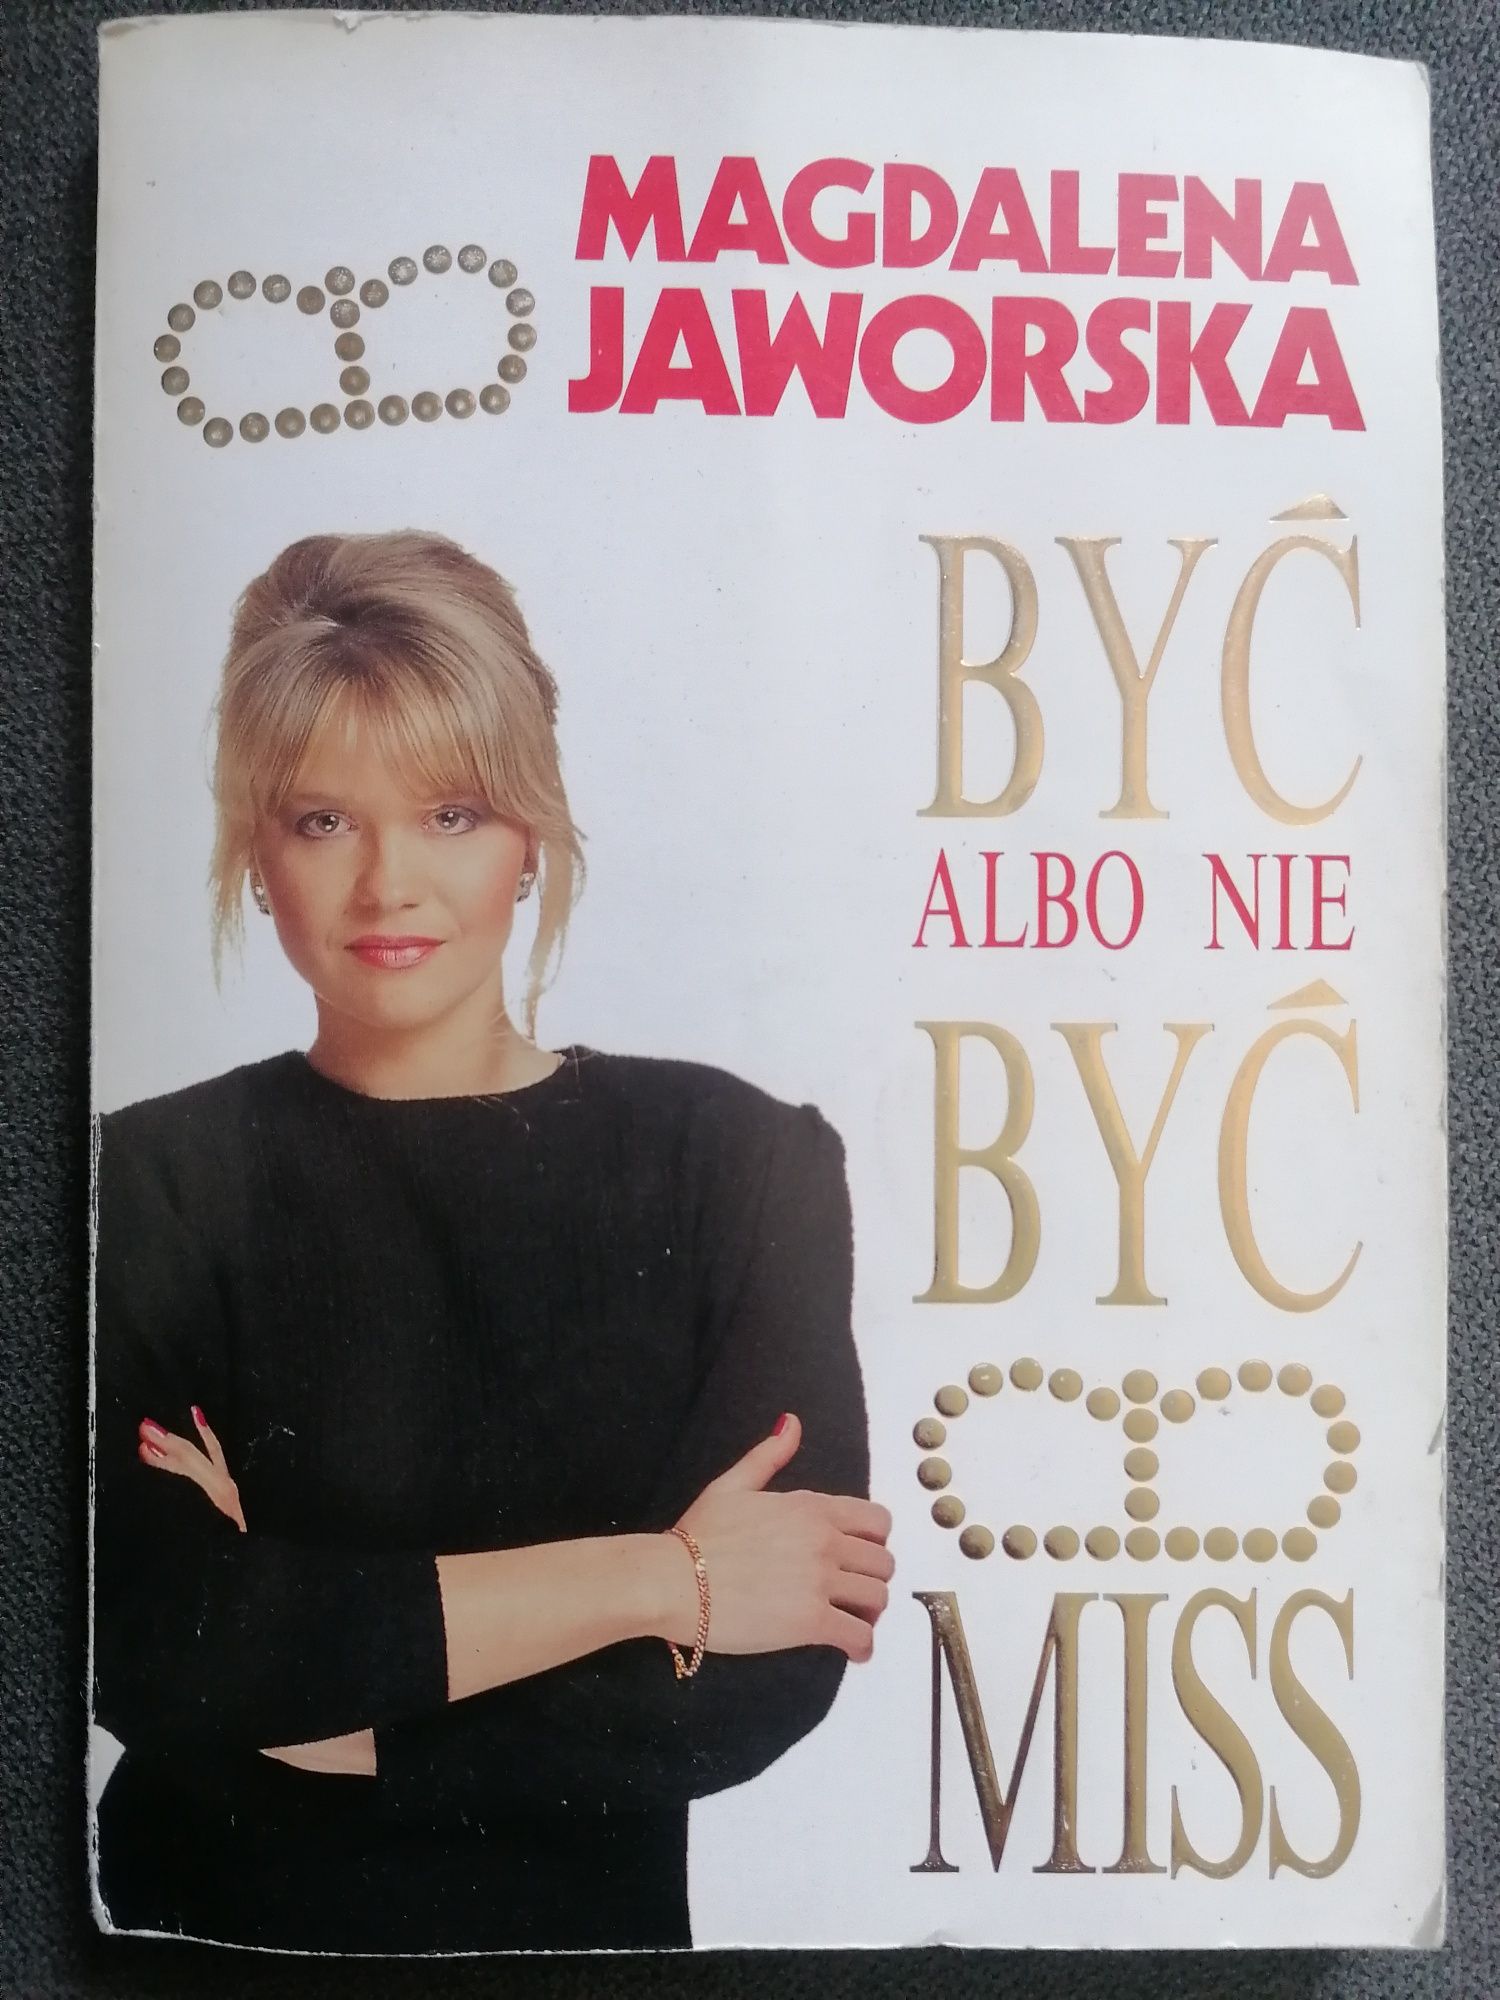 Sprzedam książkę Być albo nie być miss Magdalena Jaworska